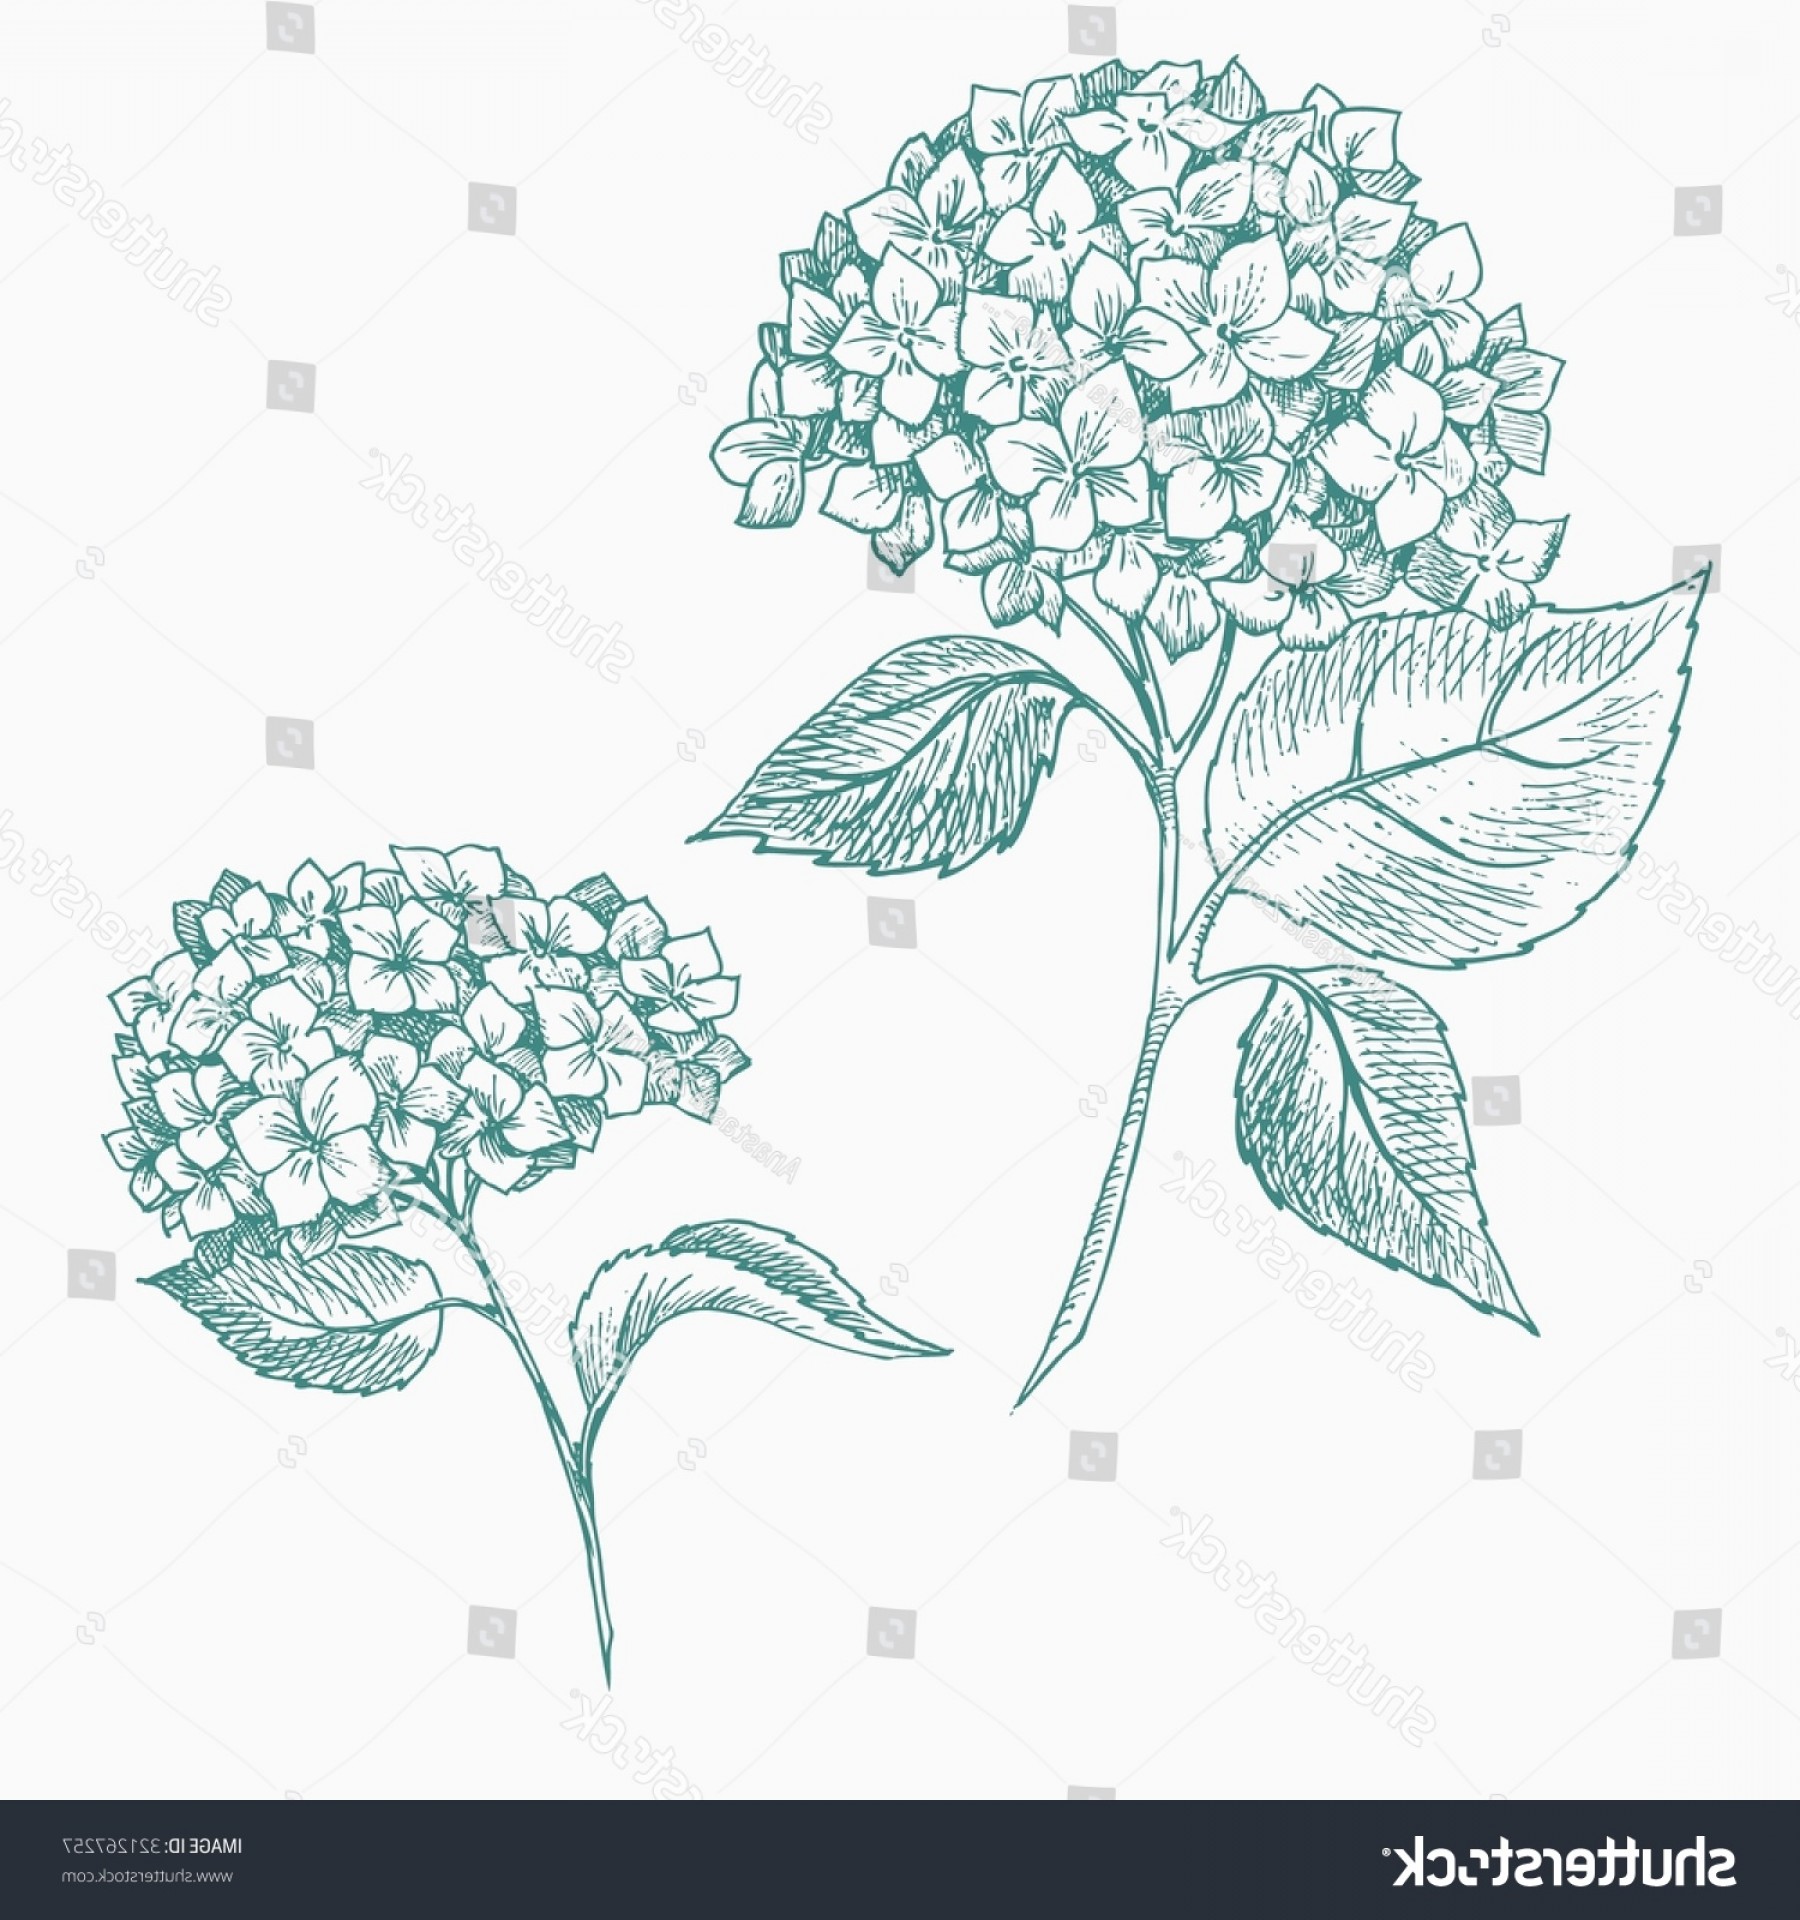 Hydrangea arborescens рисунок карандашом